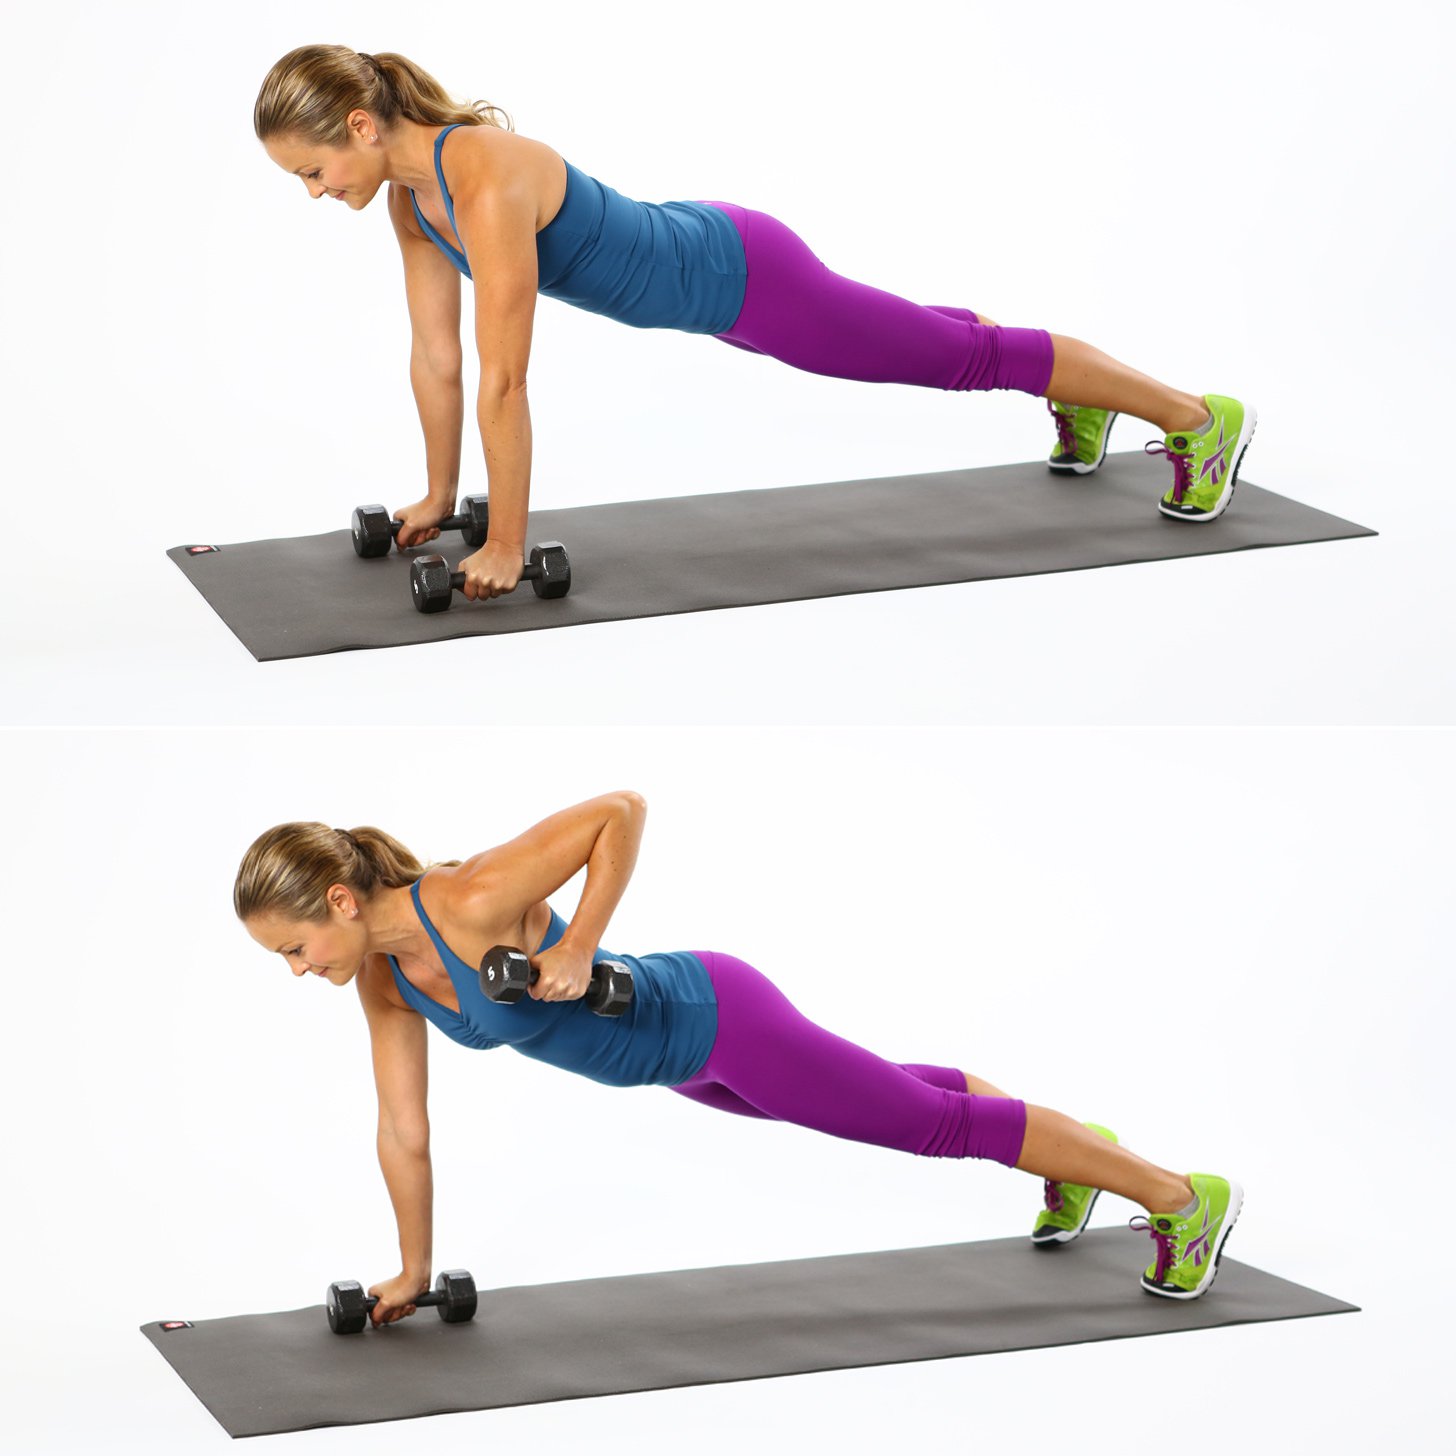 Exercises post. Planka spini планка для спины. Упражнения на спину. Планка с гантелями. Упражнения для спины для женщин.